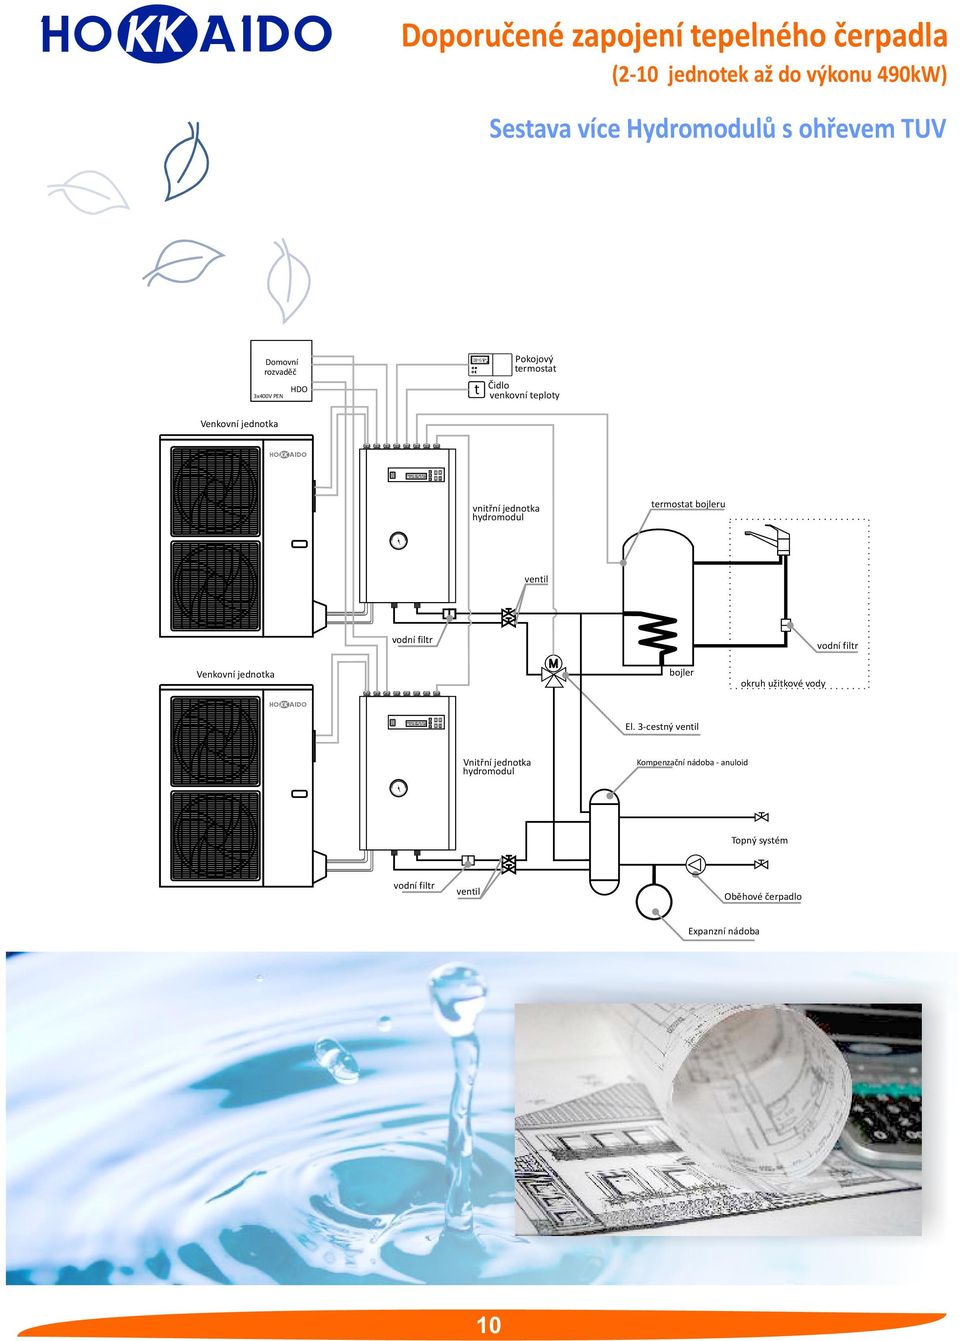 Venkovní jednotka vnitřní jednotka hydromodul termostat bojleru ventil Venkovní jednotka bojler okruh užitkové vody El.